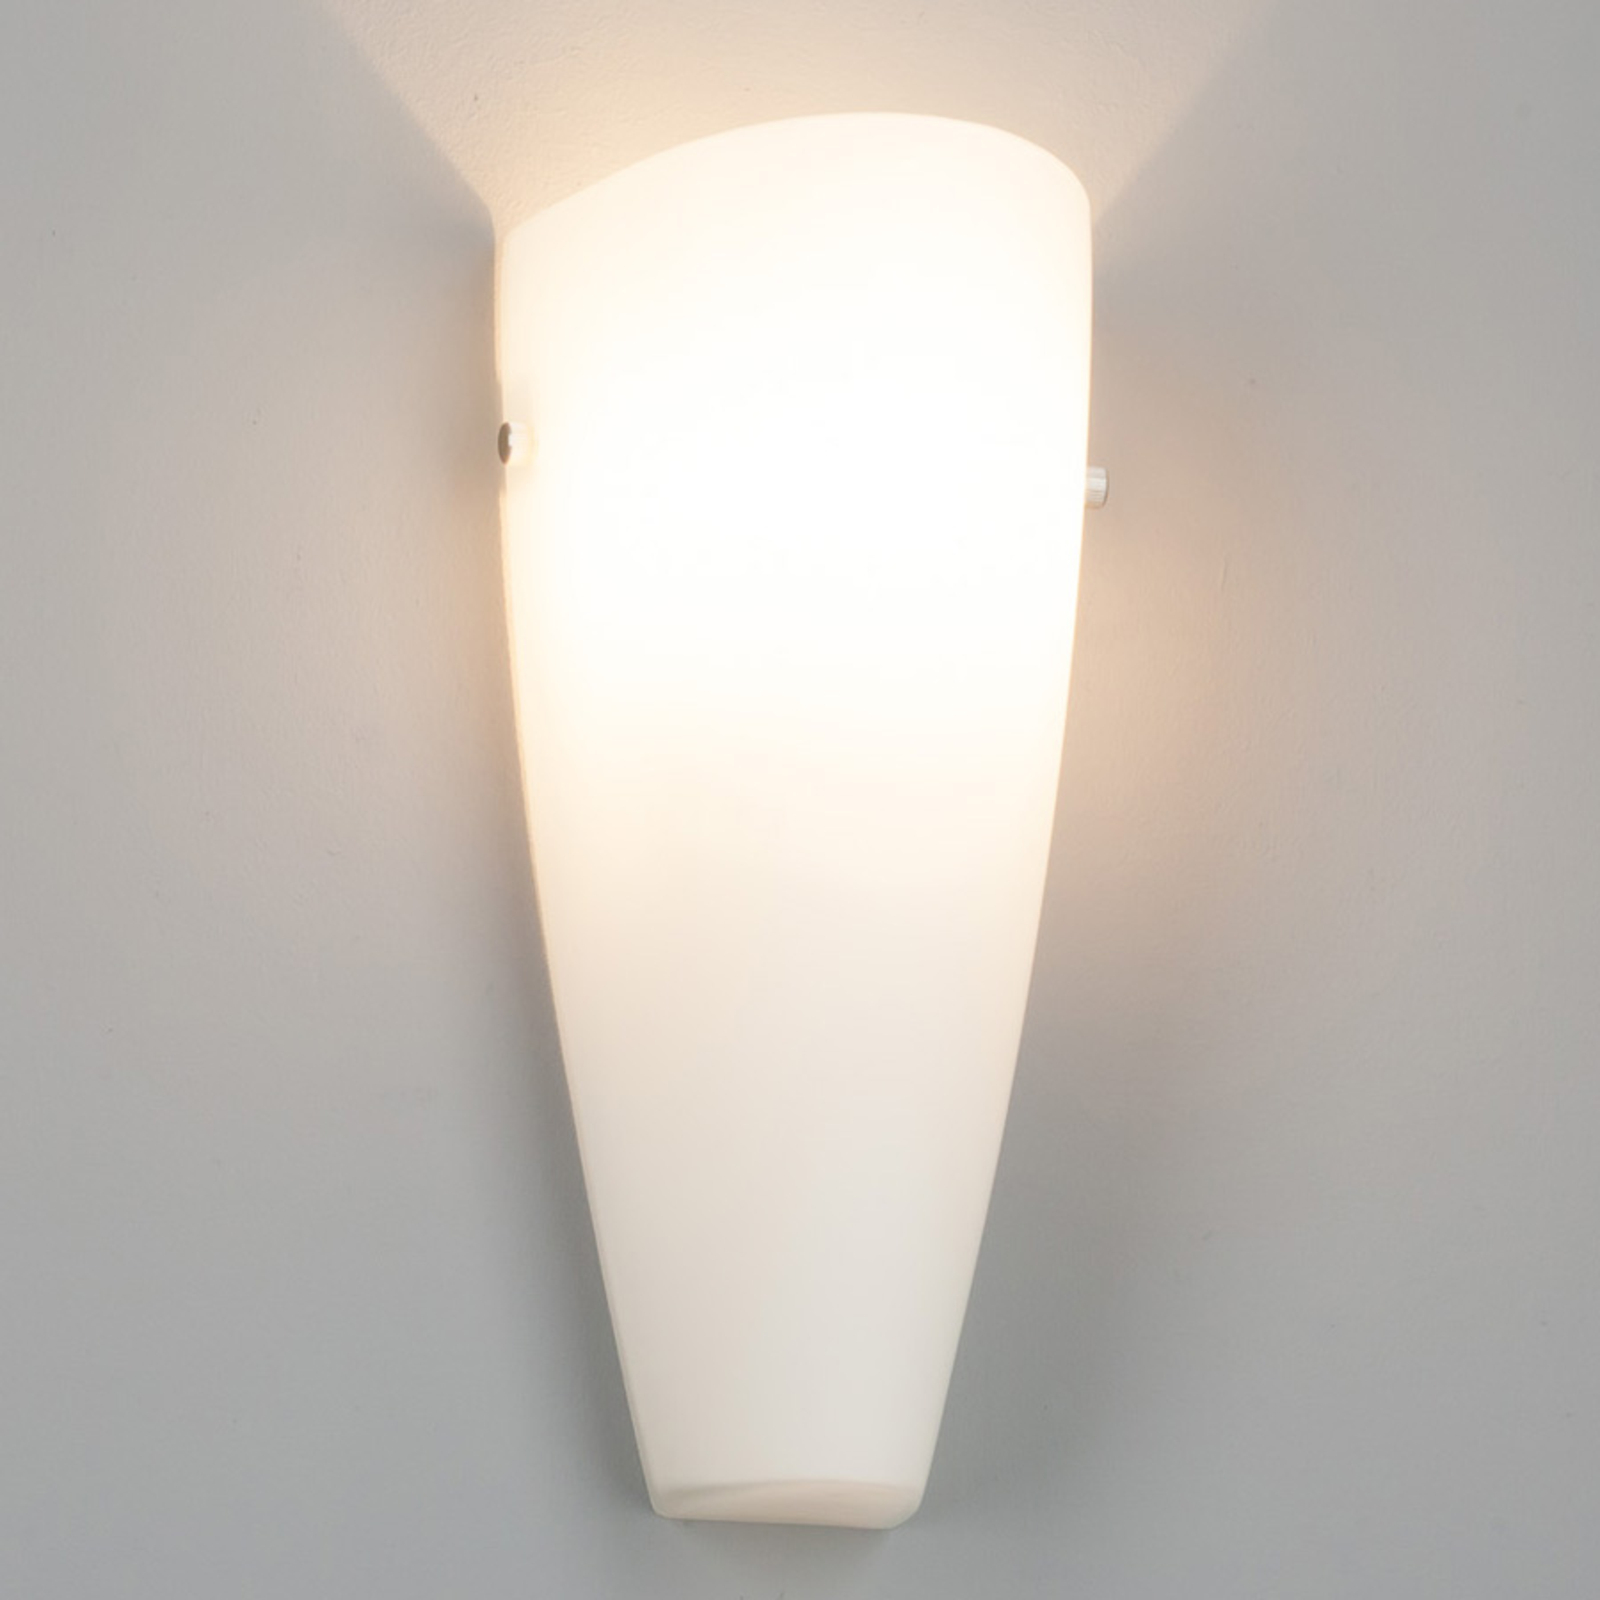 Skleněná nástěnná lampa Hermine, bílá